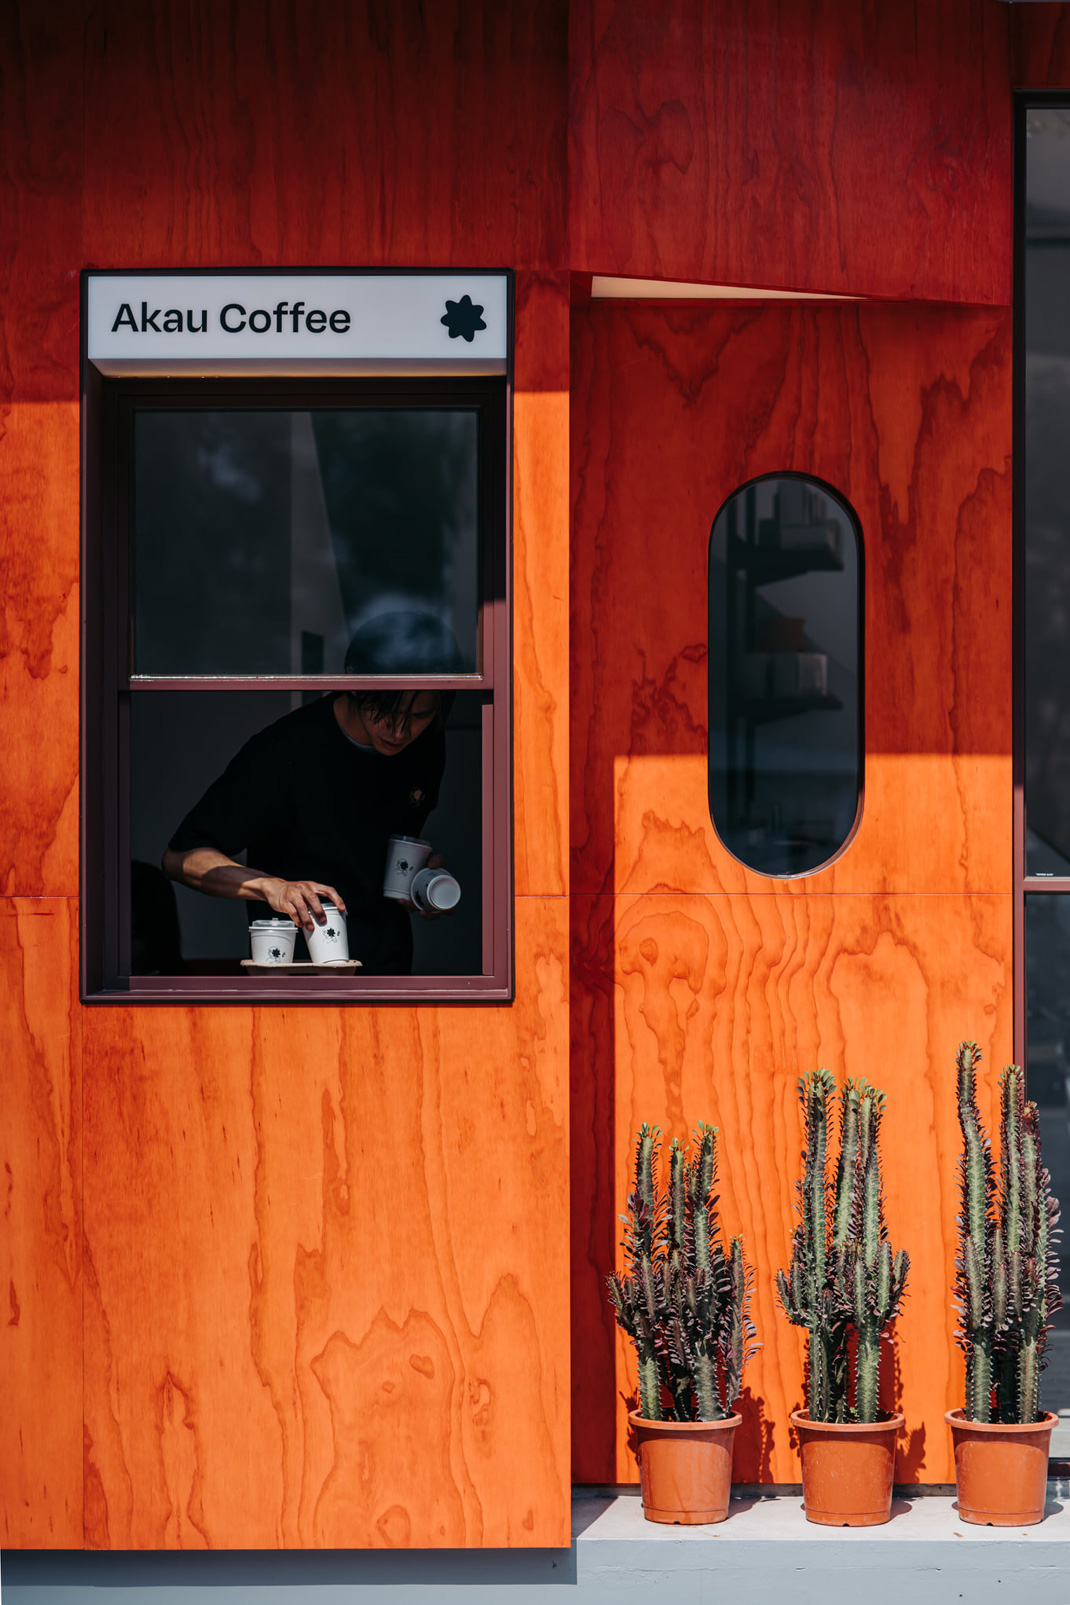 狲物咖啡Akau Coffee 台湾 咖啡店  插画设计 包装设计 logo设计 vi设计 空间设计